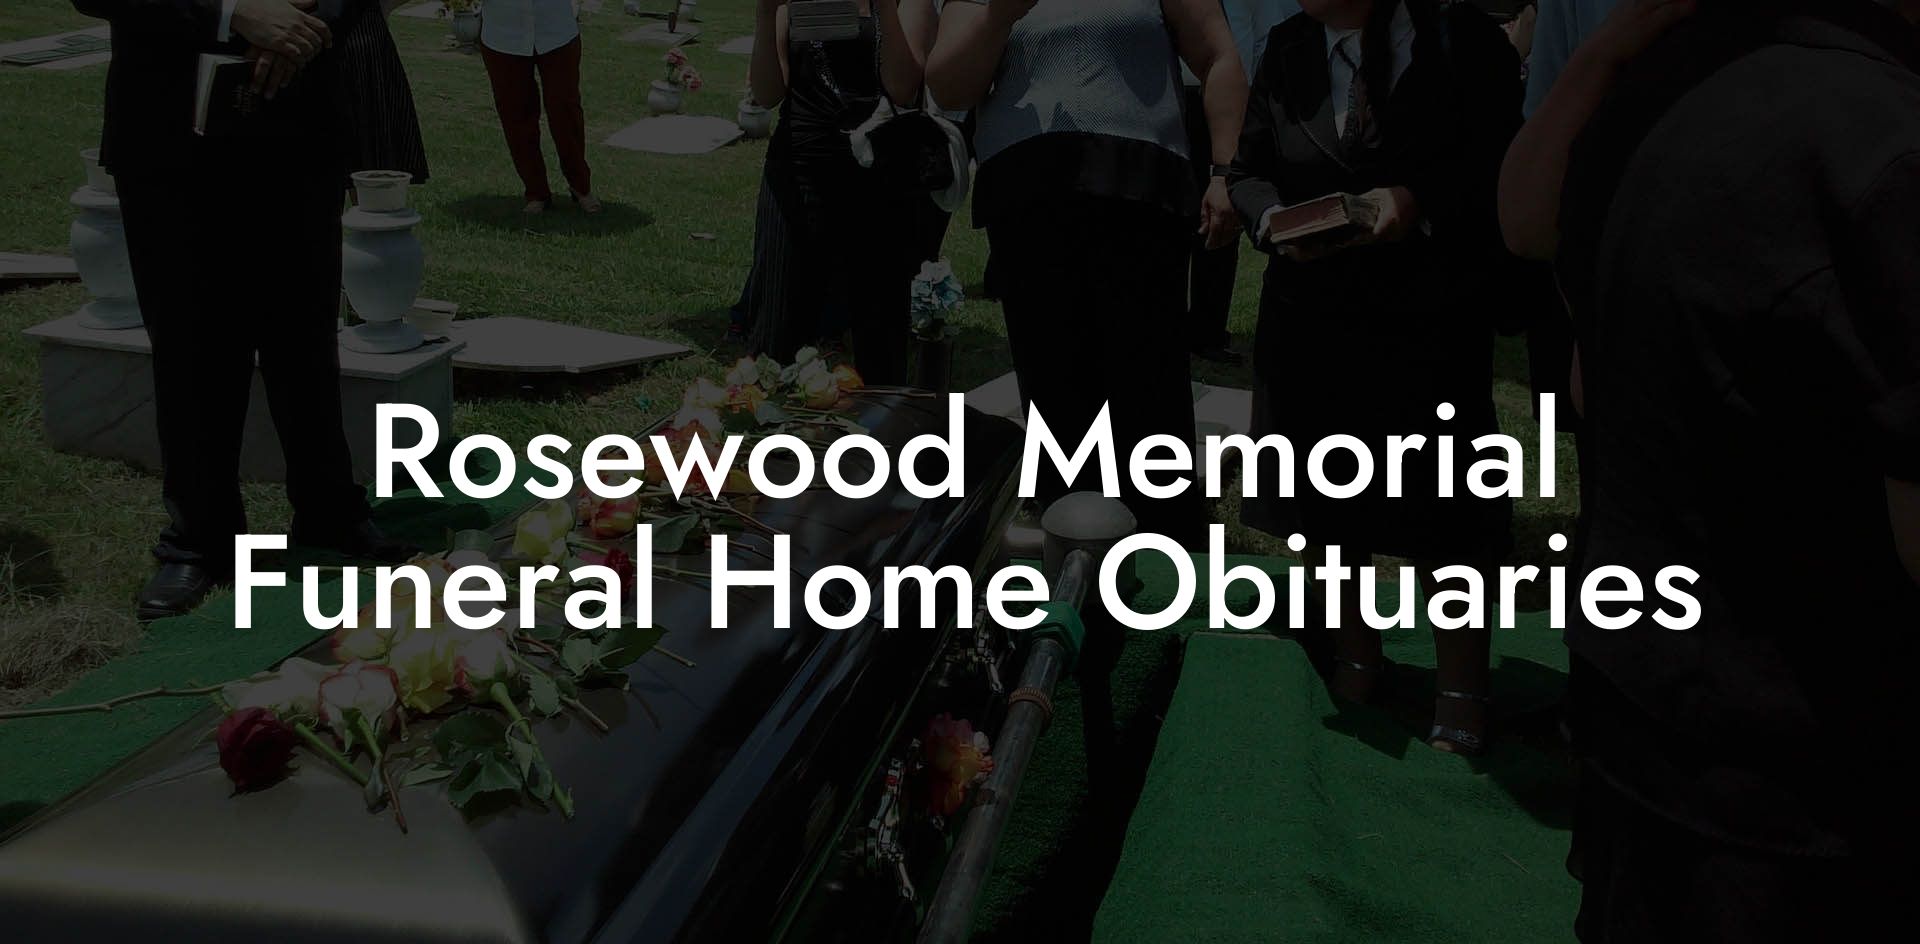 Rosewood Memorial Funeral Home Obituaries